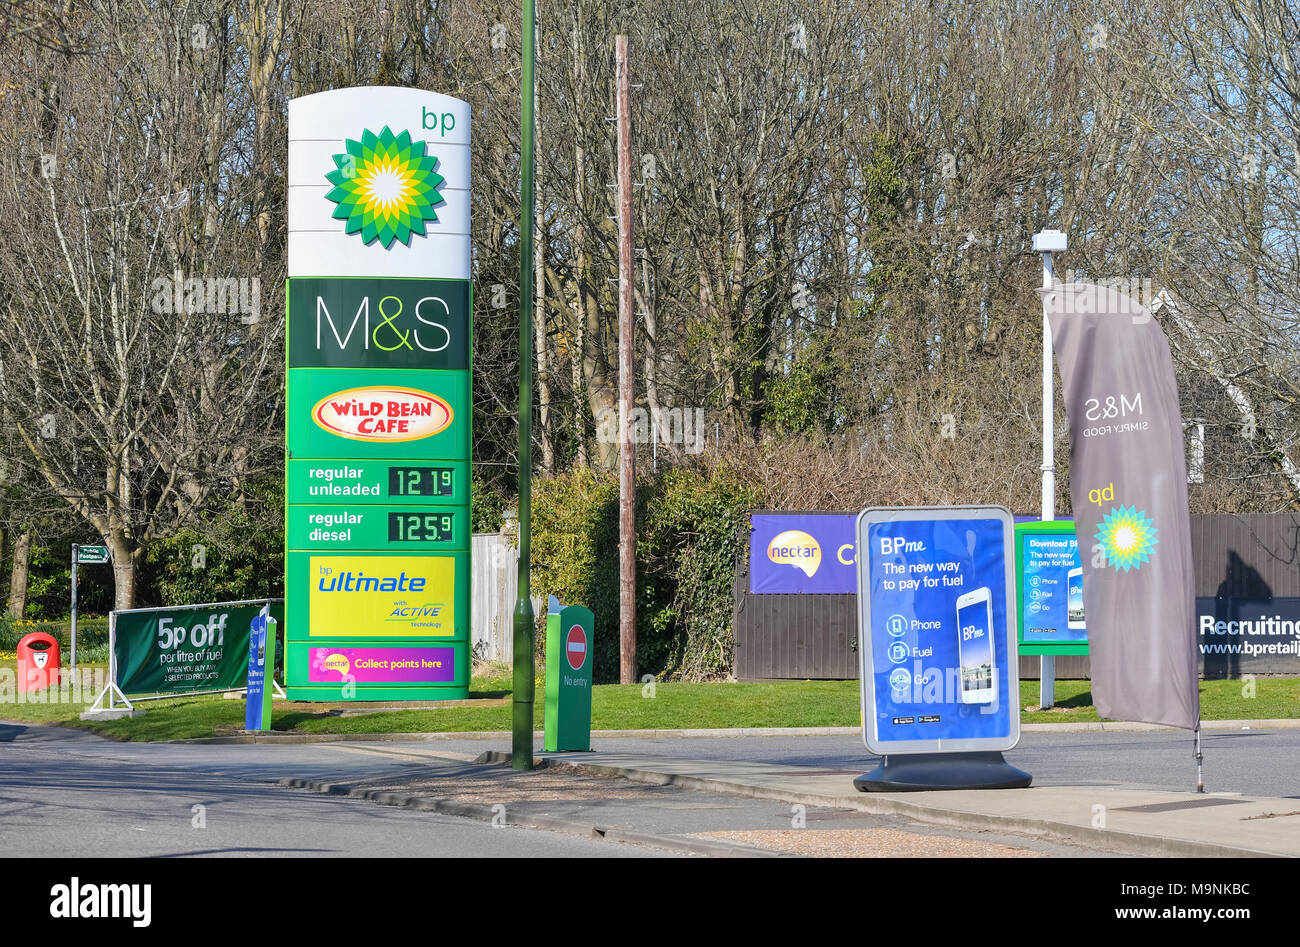 Estación de servicio BP para comprar gasolina y diesel, con tiendas en la planta en el Reino Unido. Estación de servicio BP. Foto de stock